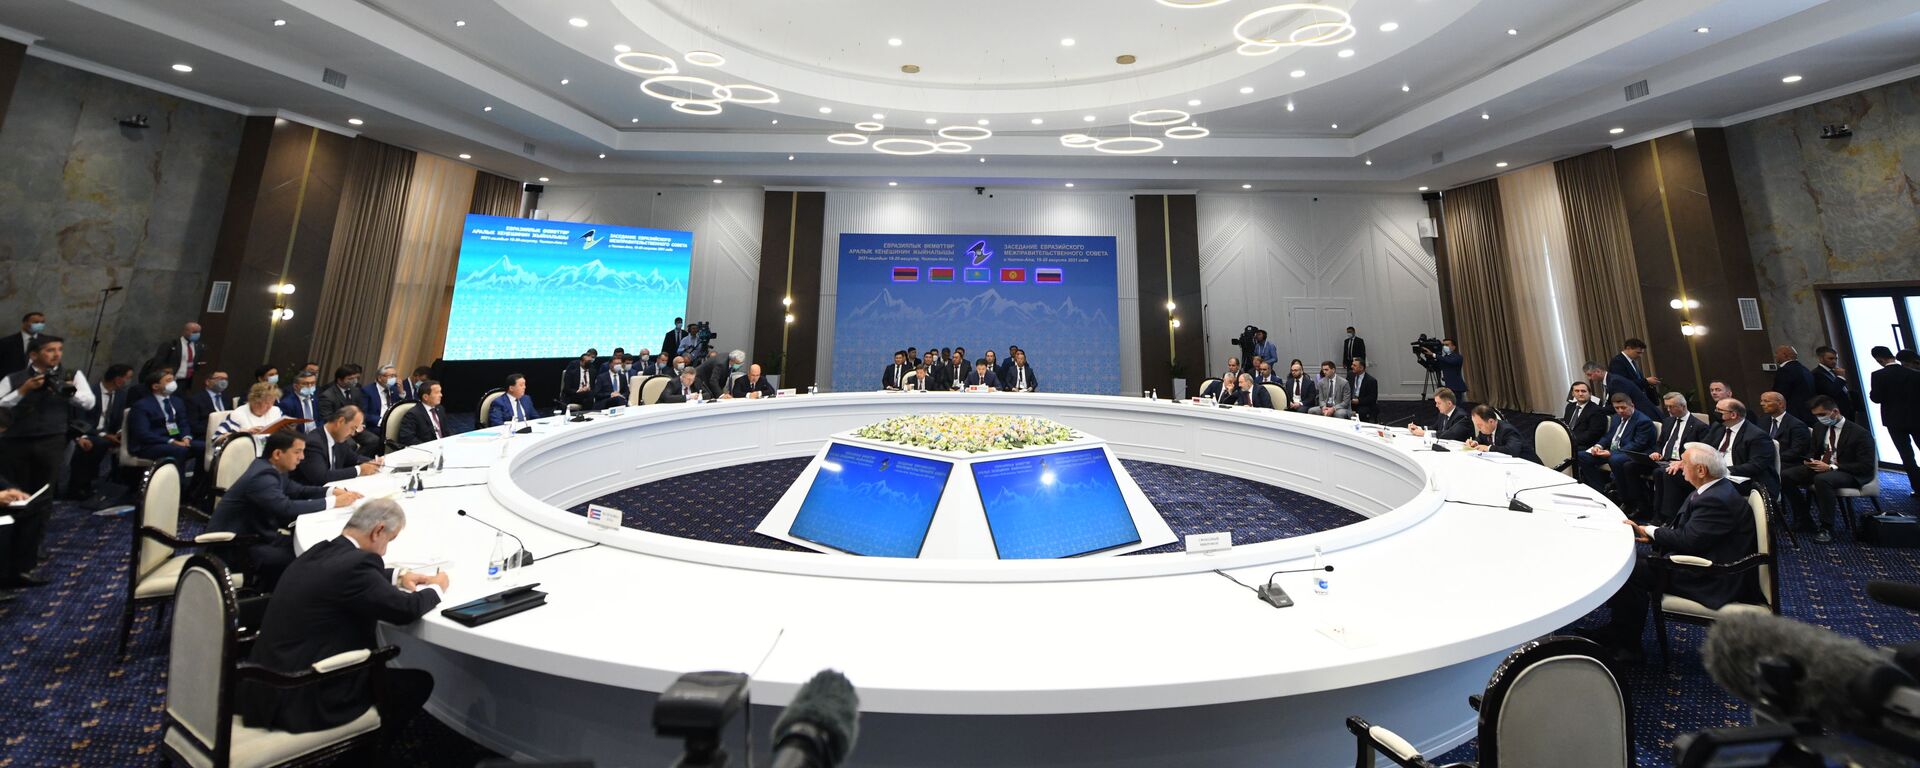 Заседание Евразийского межправительственного совета в Чолпон-Ате - Sputnik Кыргызстан, 1920, 20.08.2021